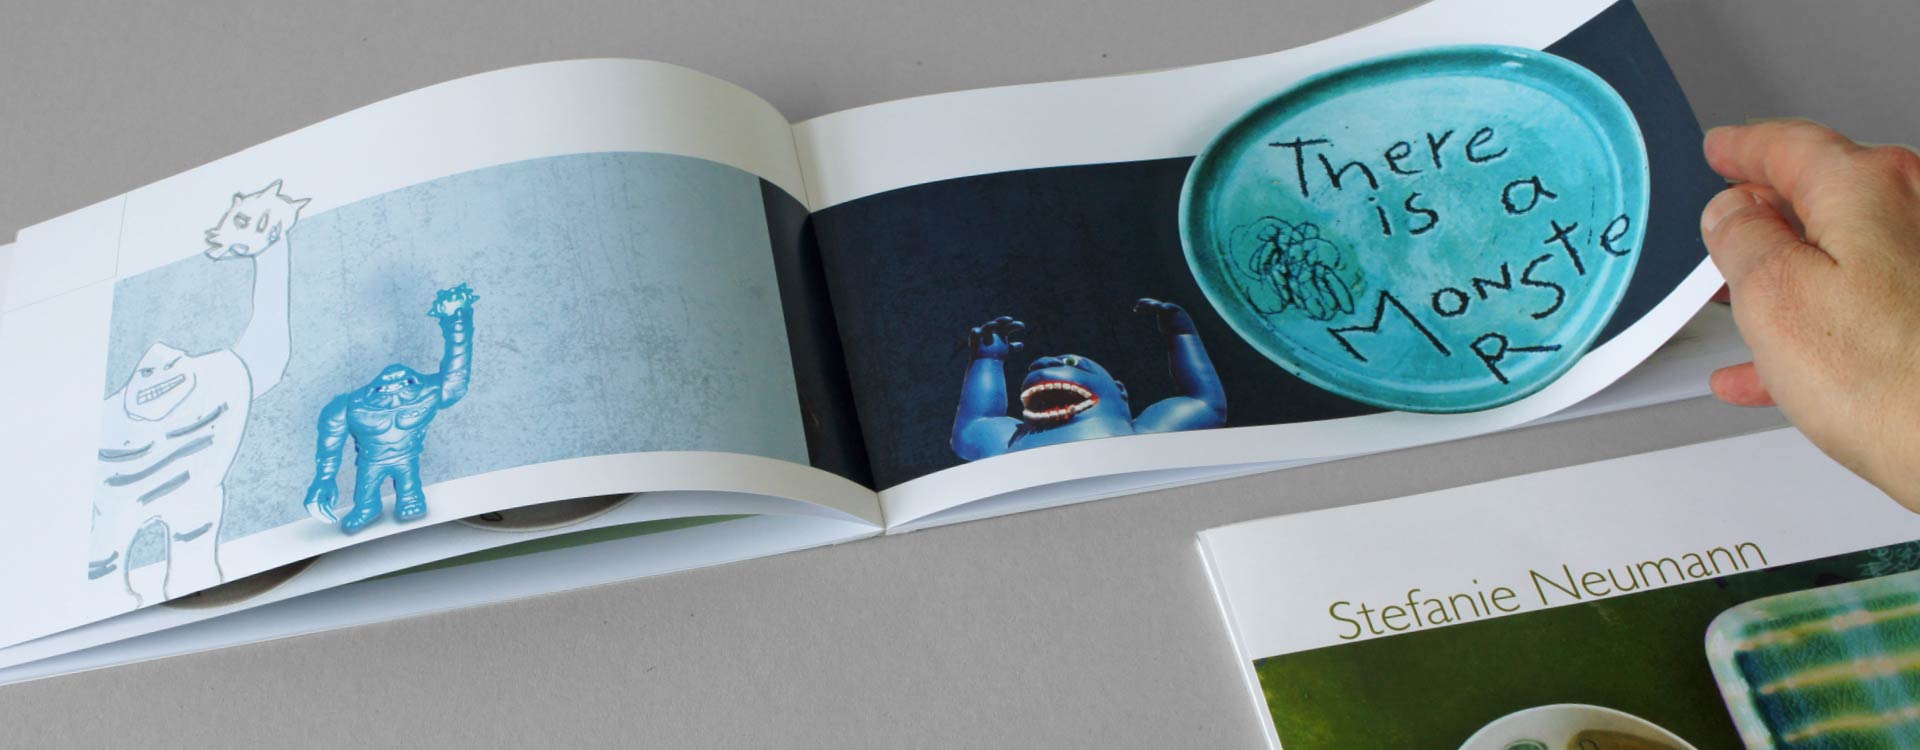 Katalog Stefanie Neumann, Keramik und Grafik; Design: Kattrin Richter | Büro für Grafikdesign